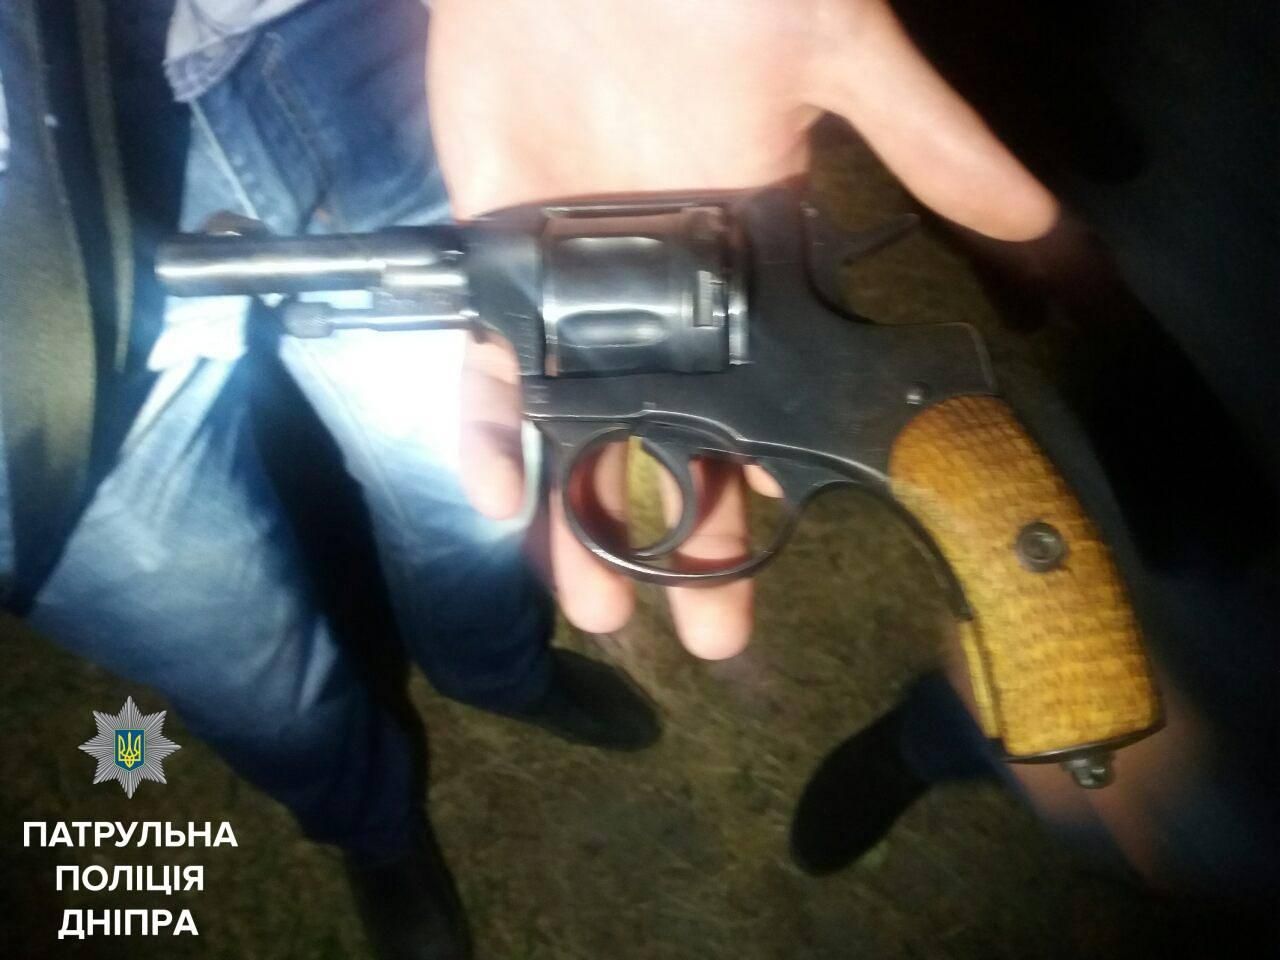 В одном из спальных районов Днепра произошла драка со стрельбой